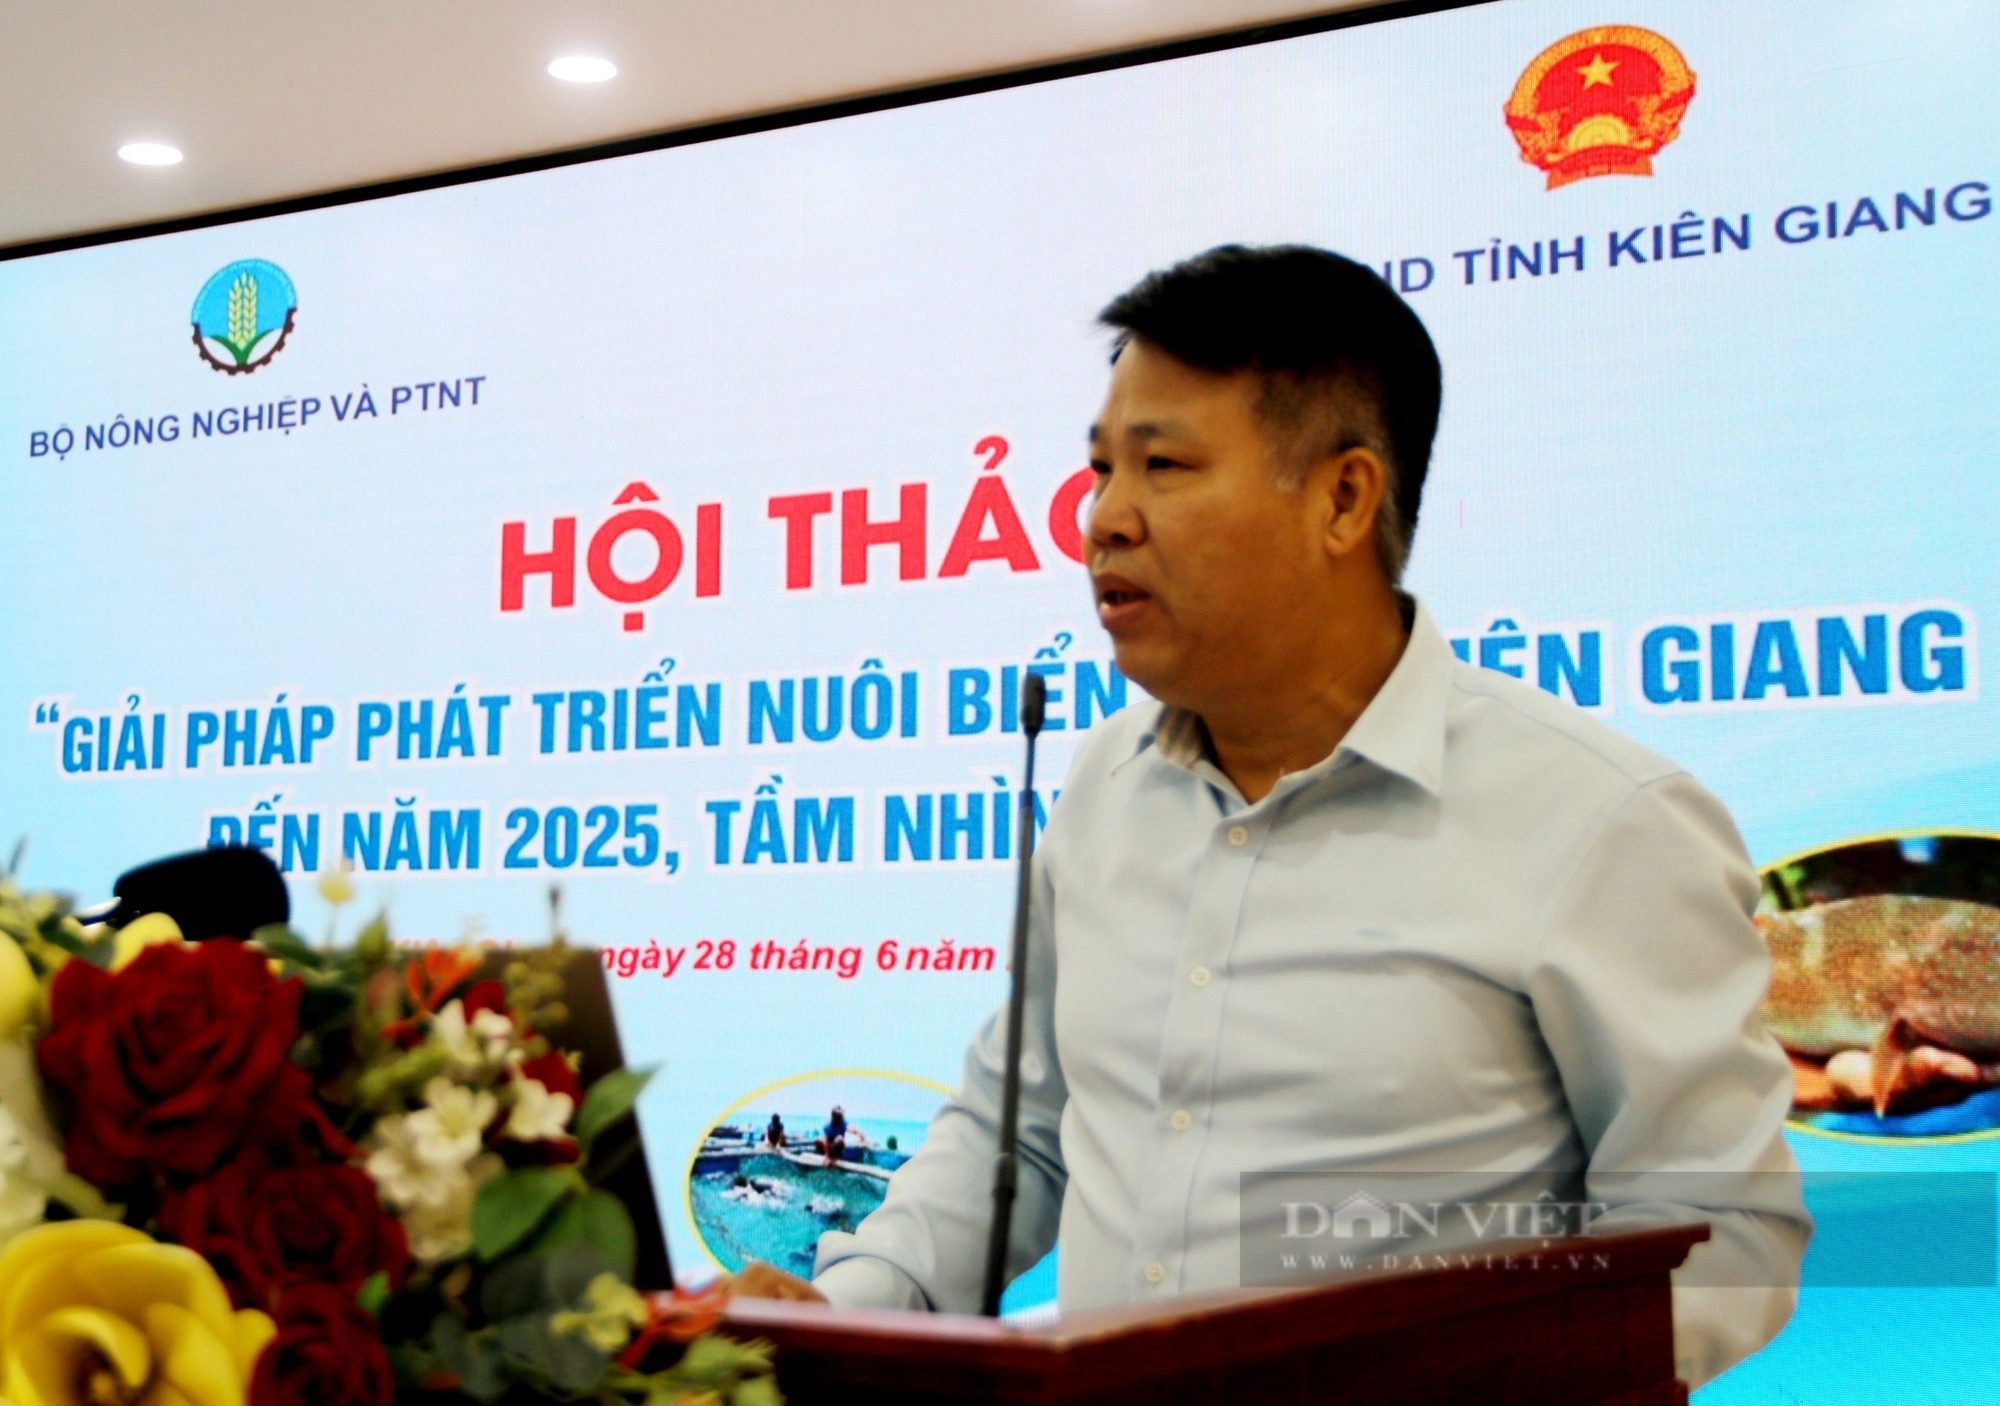 Kiên Giang: Bàn giải pháp phát triển nghề nuôi biển đến năm 2025, tầm nhìn năm 2030- Ảnh 2.